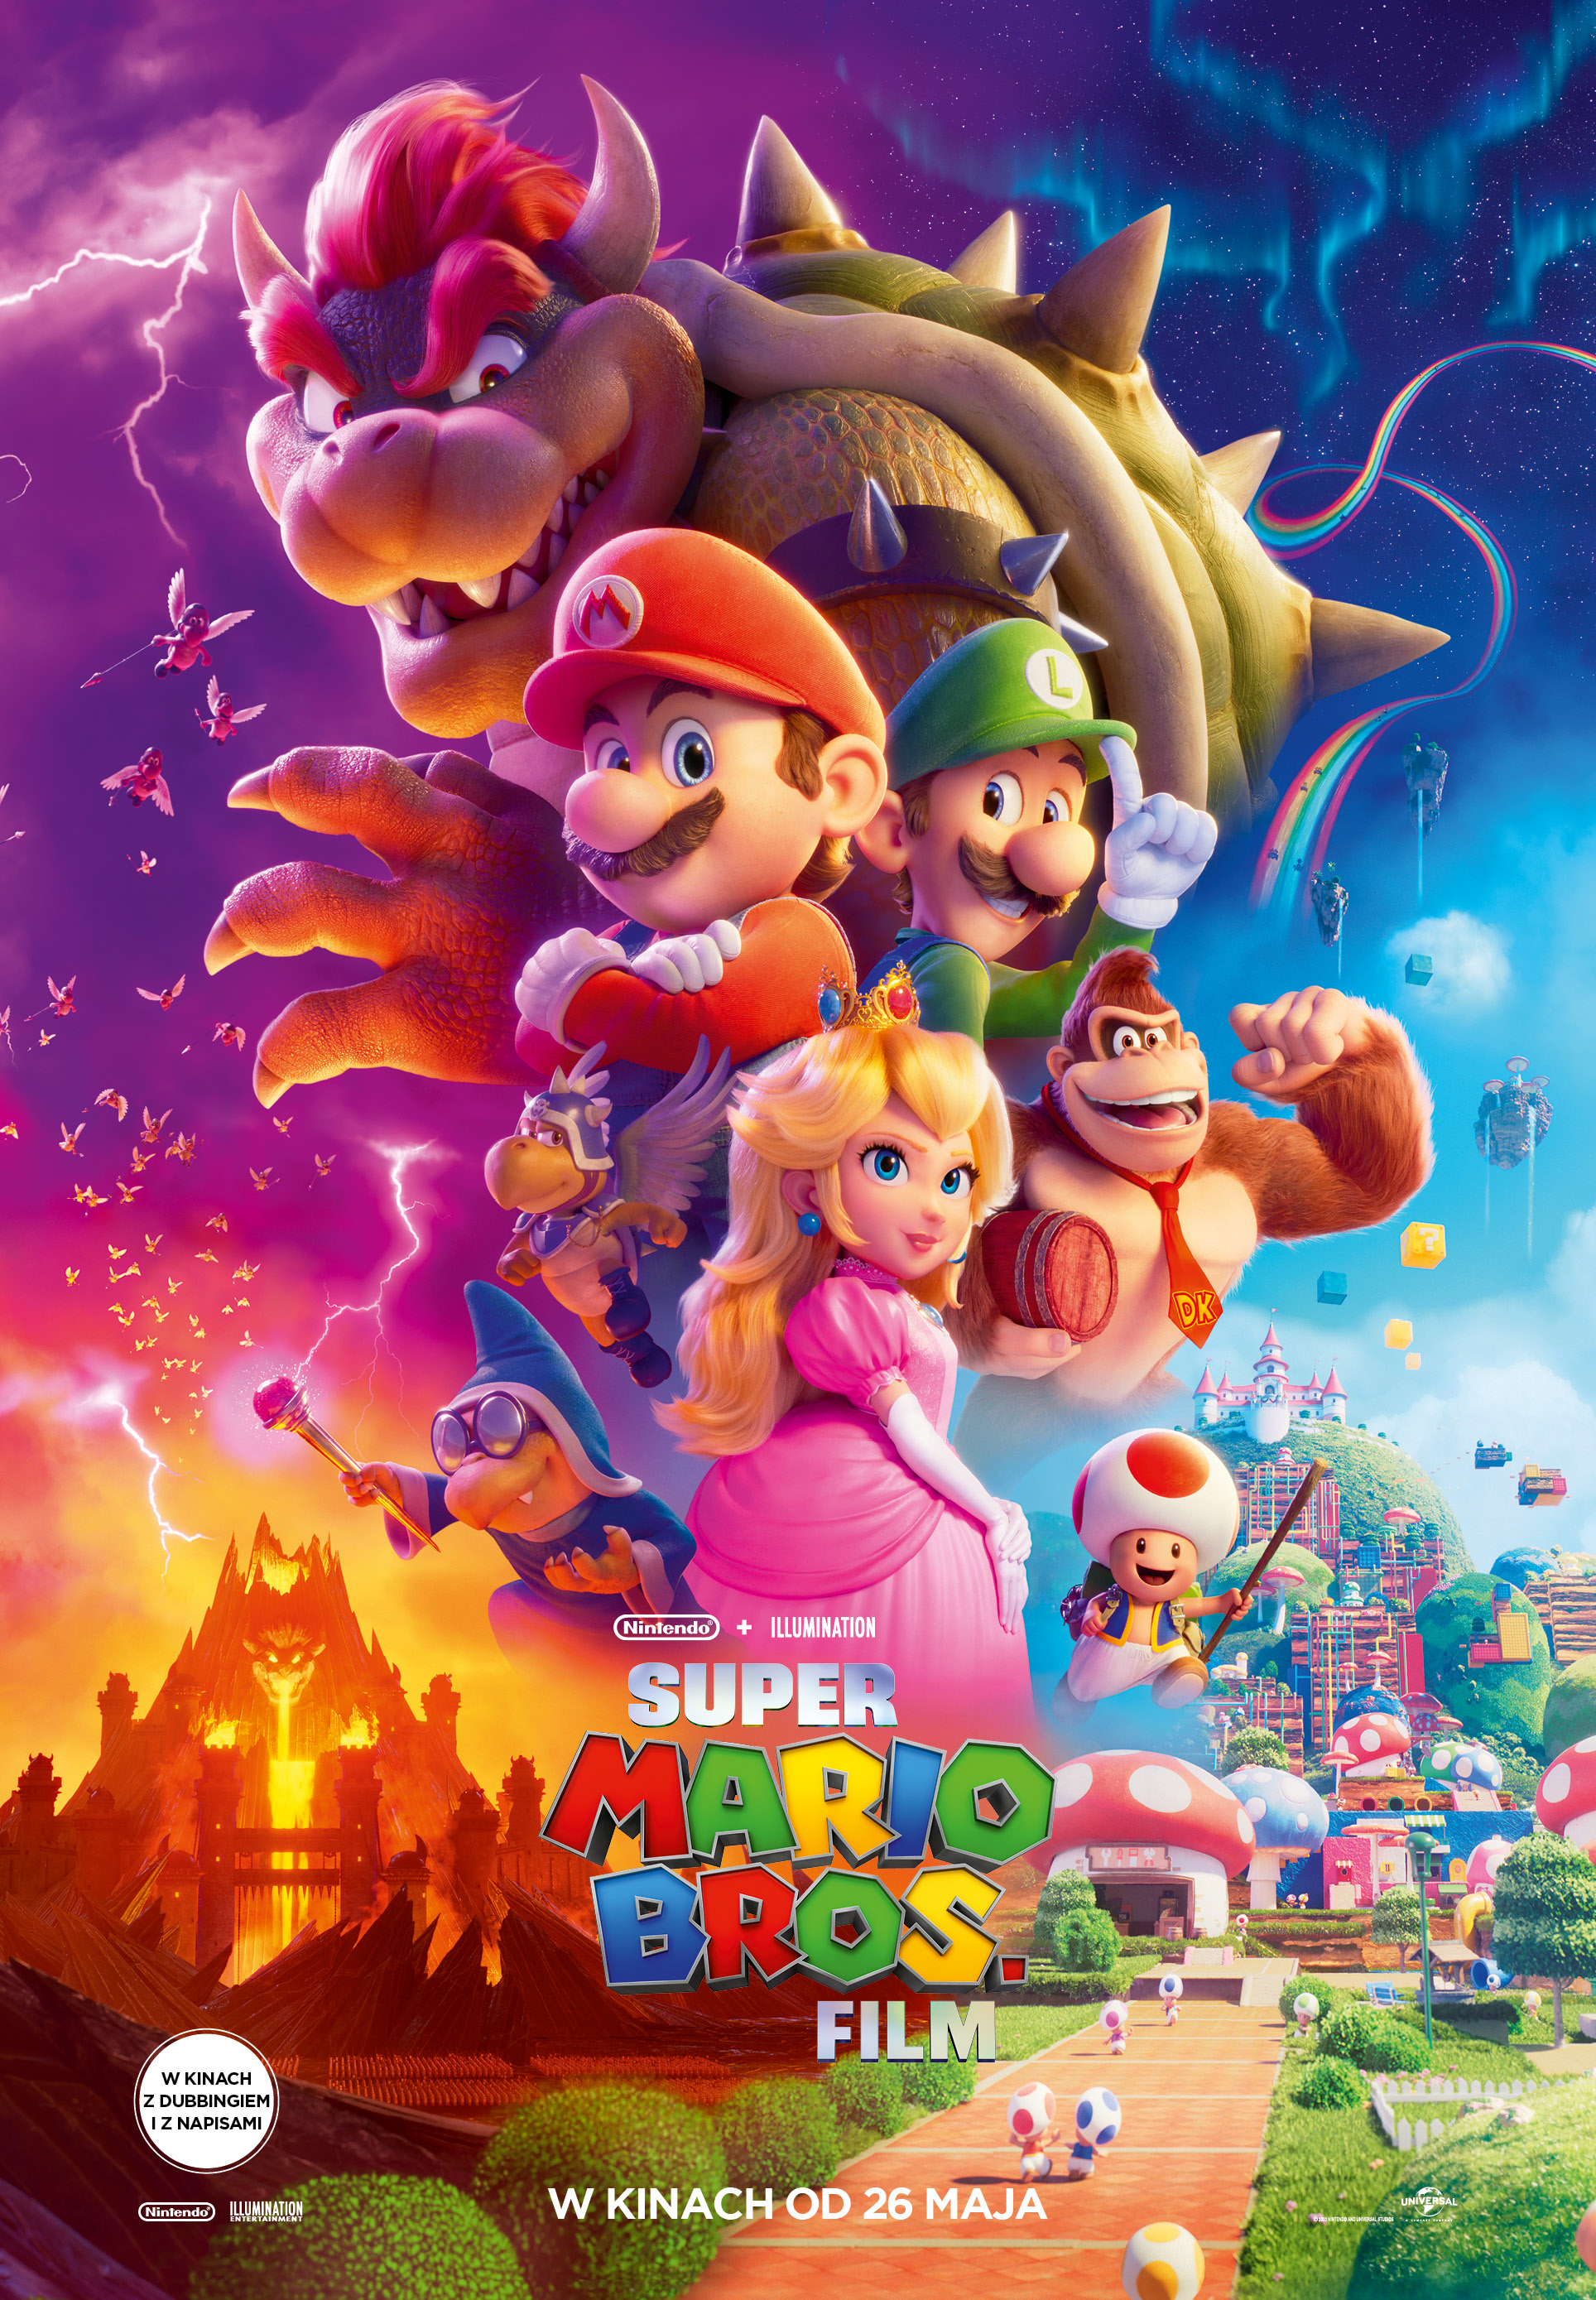 Plakat Super Mario Bros. Film 179297